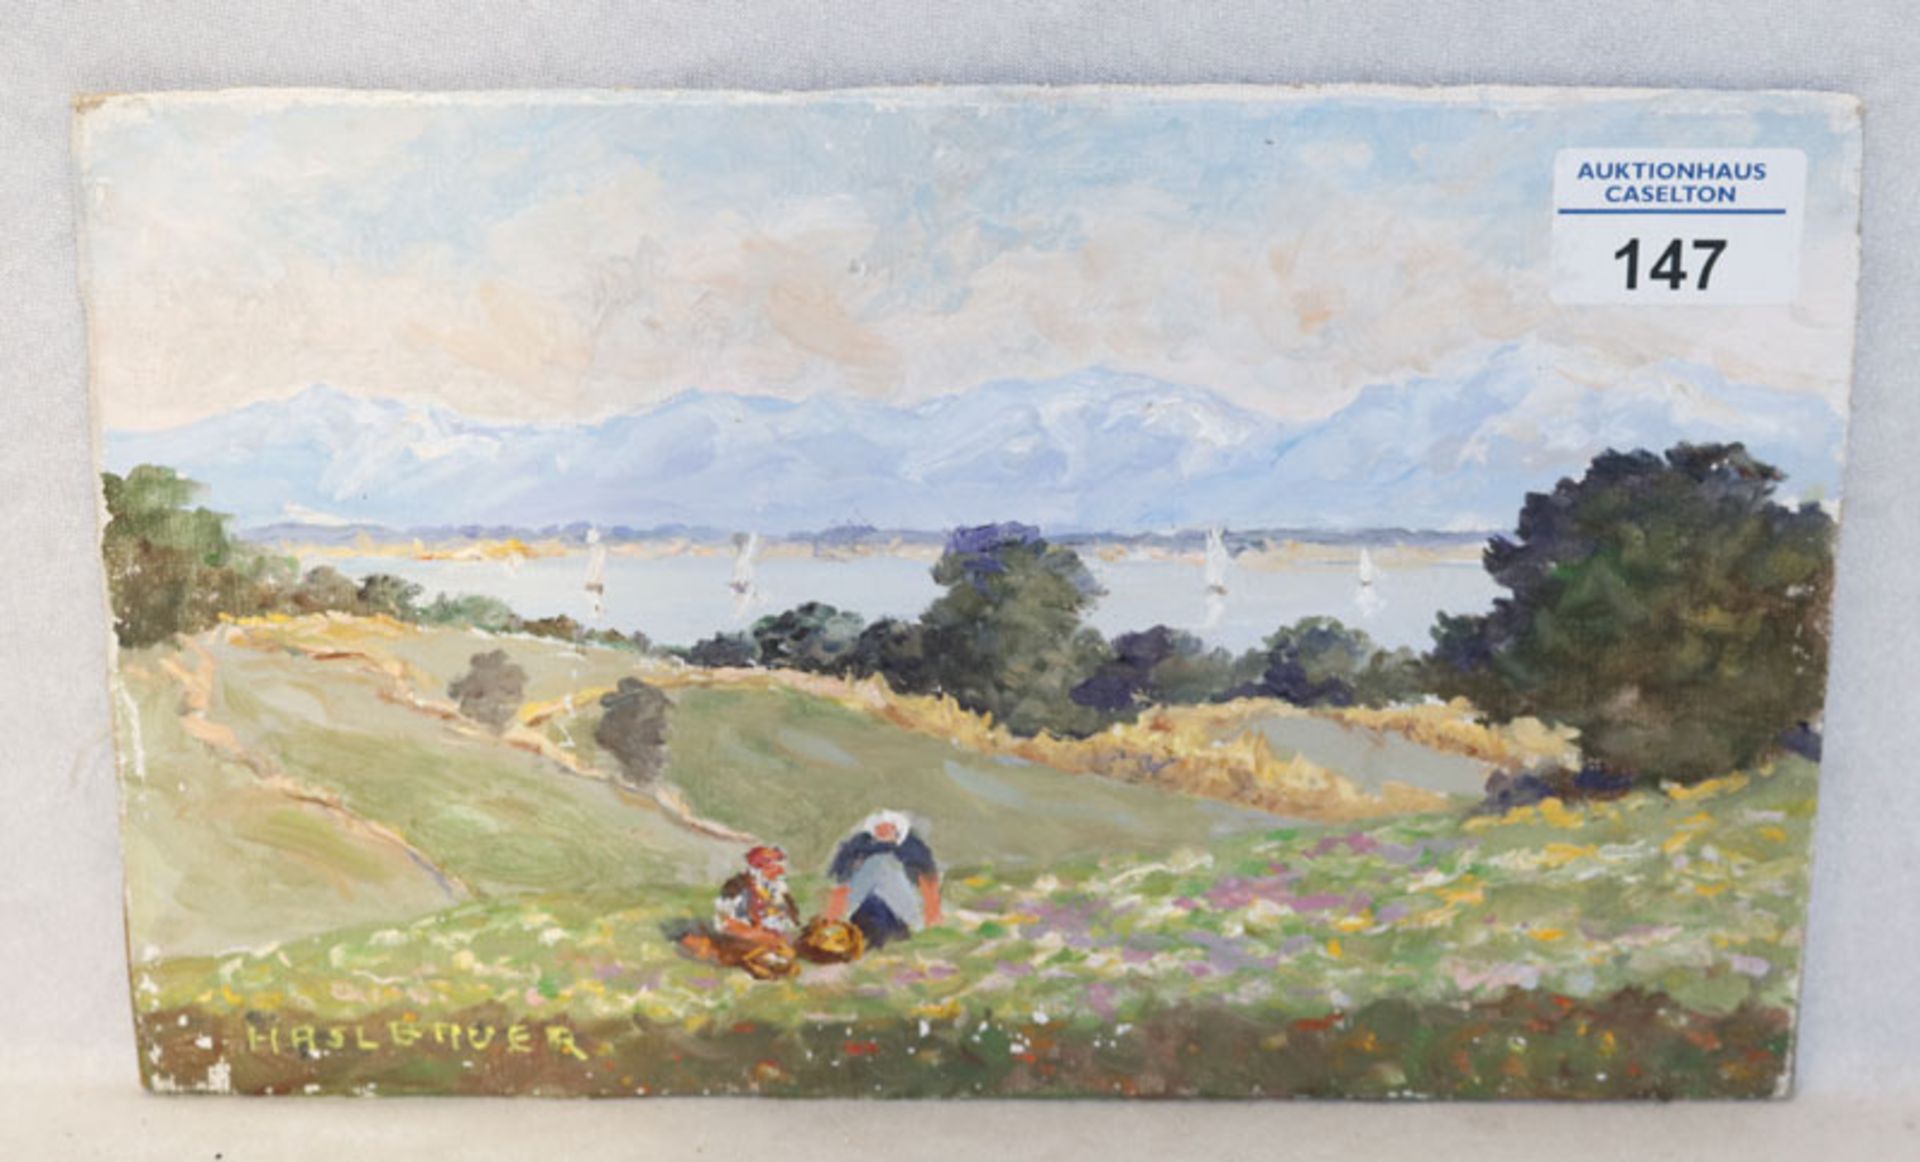 Gemälde ÖL/LW auf Hartfaser 'Blick auf Voralpenlandschaft mit See', signiert Haslbauer, Paul, * 1919